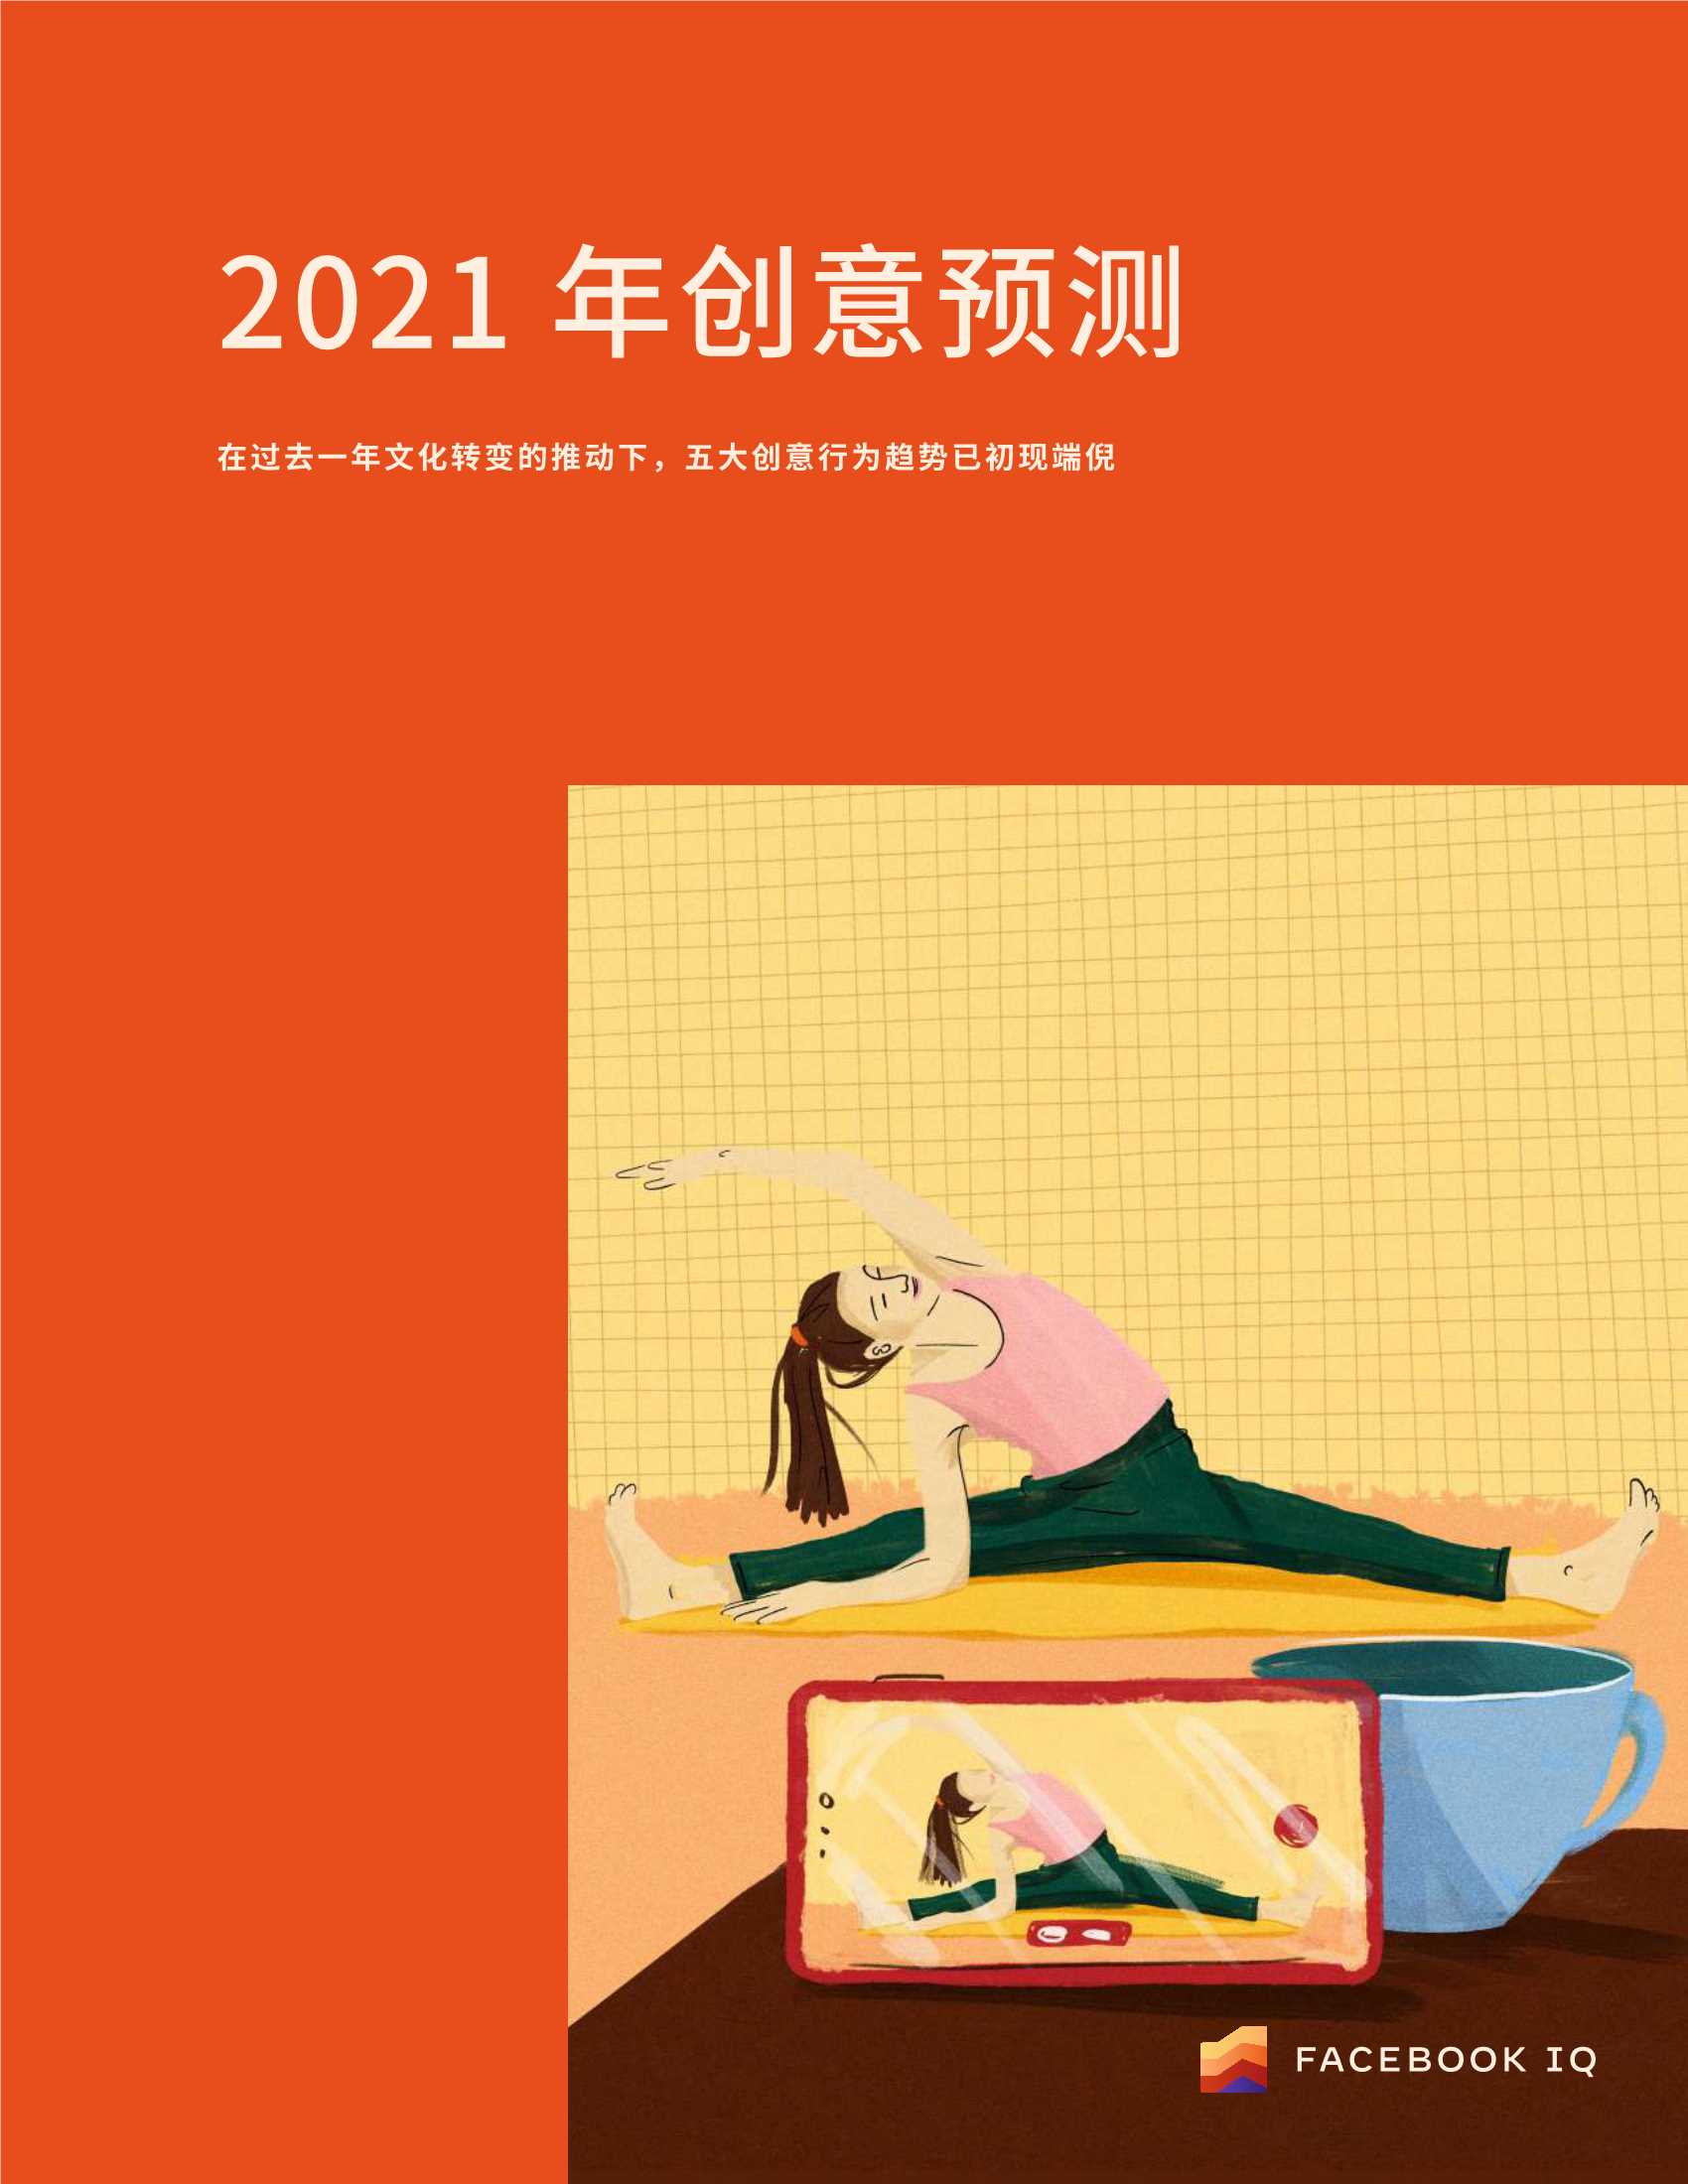 2021 年广告创意趋势预测报告-2021.12-25页